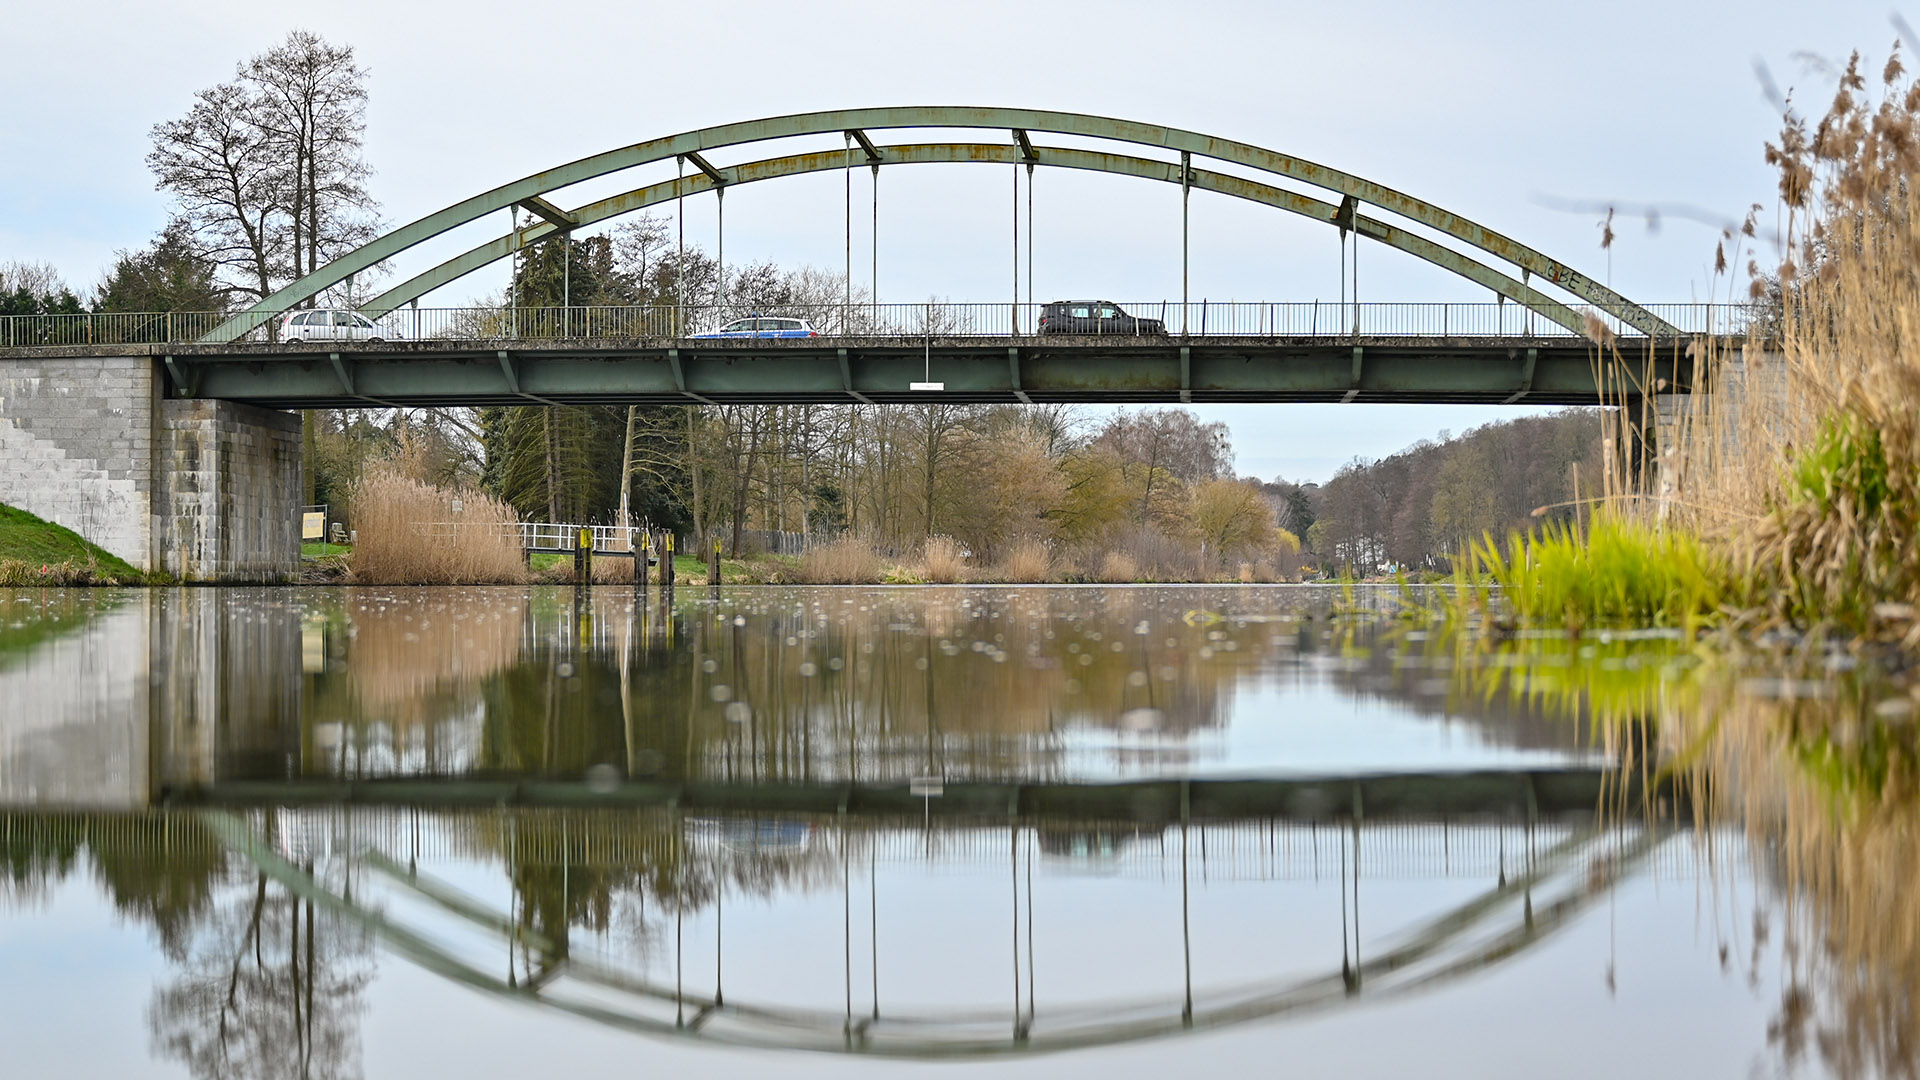 Archivbild: Die Brücke der Bundesstraße 158 über dem Oder-Havel-Kanal. (Quelle: dpa/Pleul)